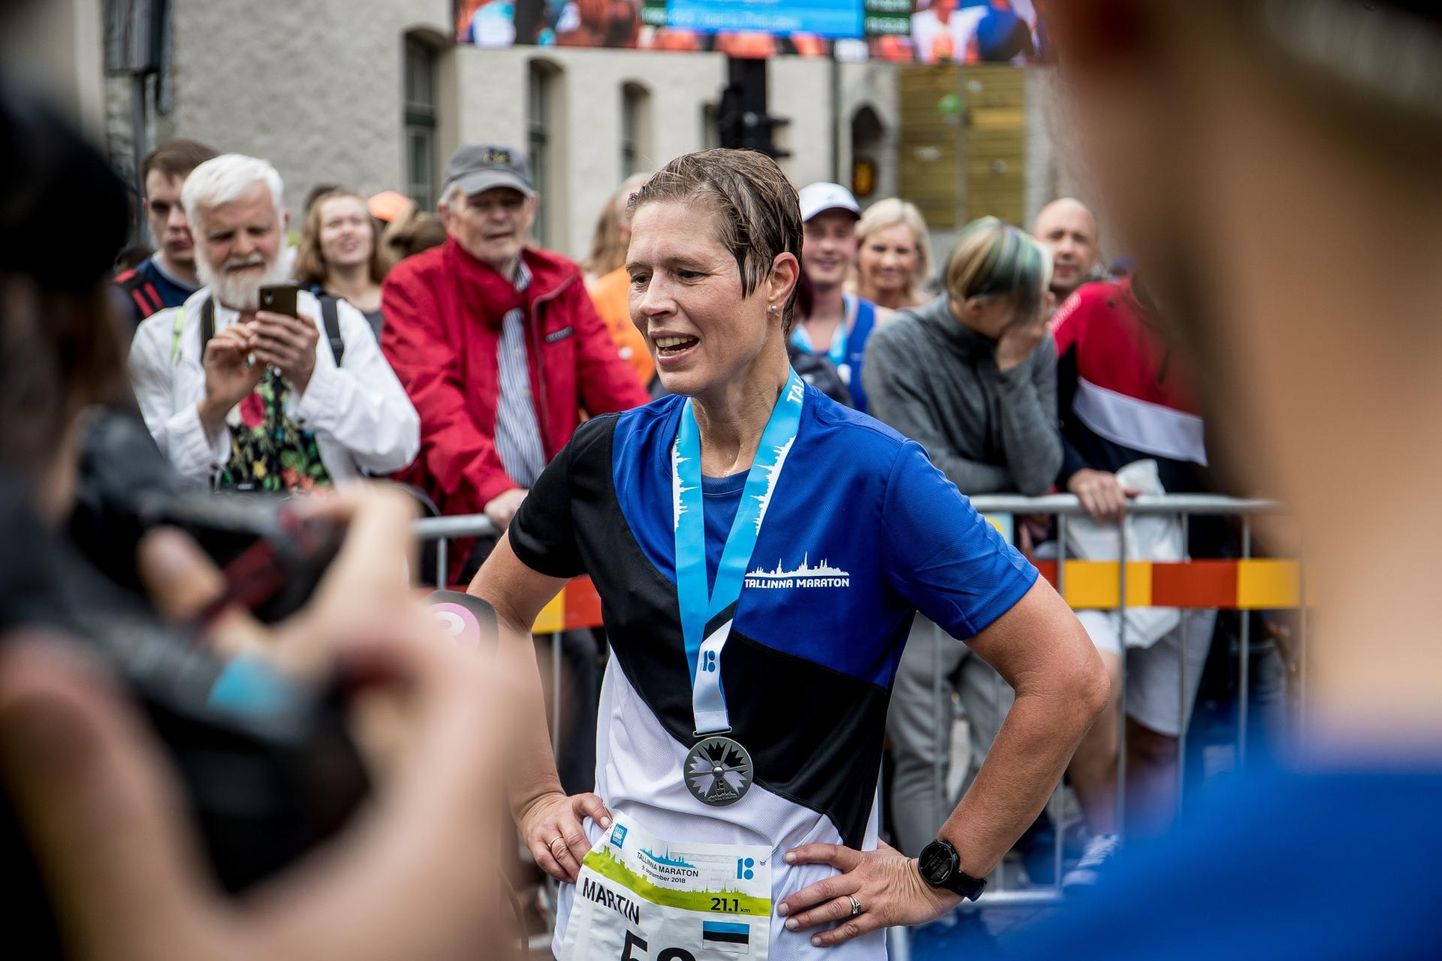 President Kersti Kaljulaid kandis üleeelmisel aastal Tallinna maratonil Rakvere disaineri Priit Verlini loodud jooksusärki ja sai kaela sama mehe tehtud osalejamedali.